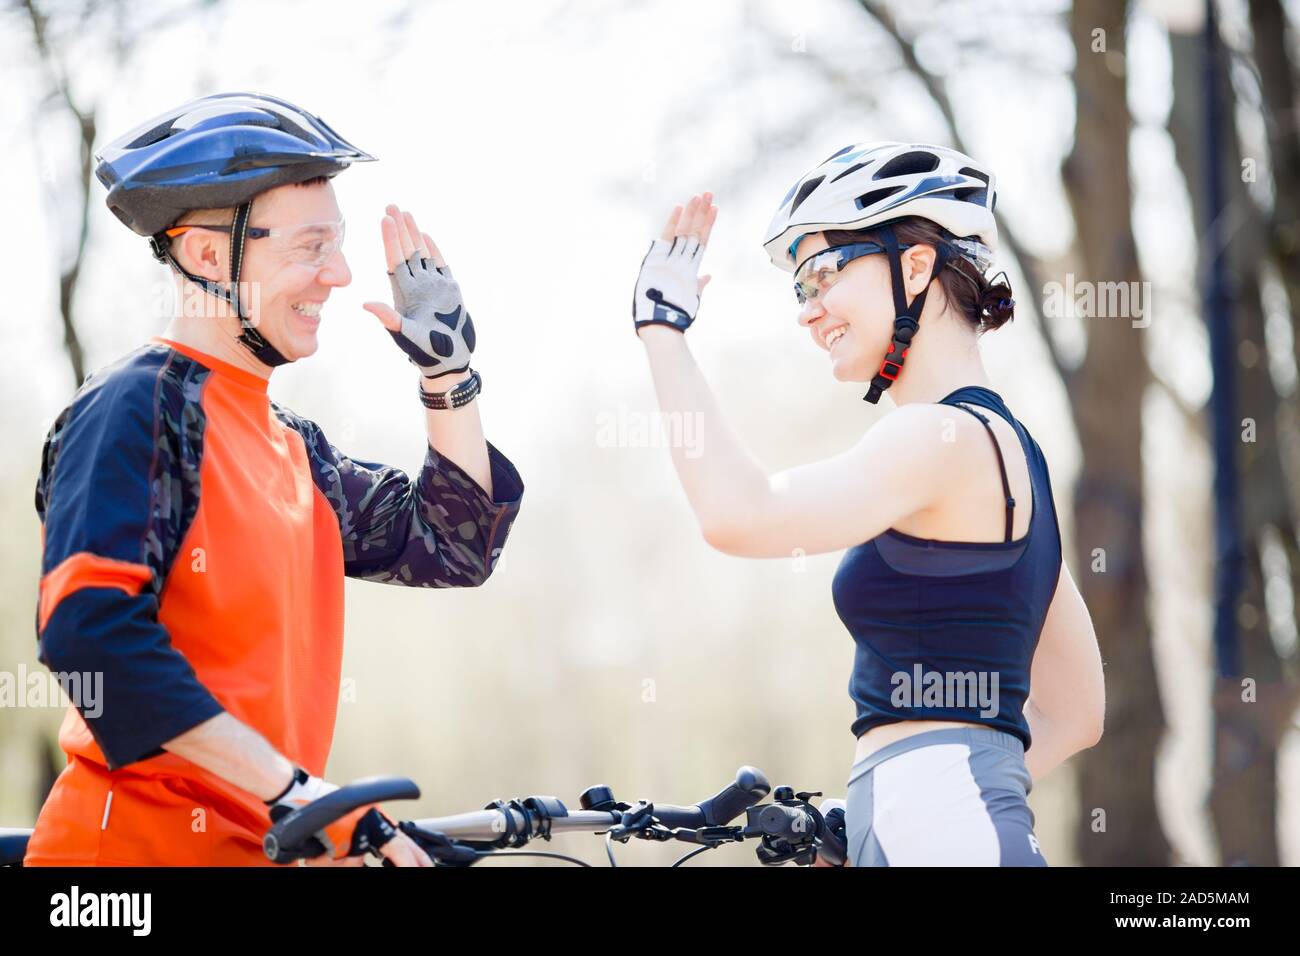 Dos atletas en bicicleta Foto de stock